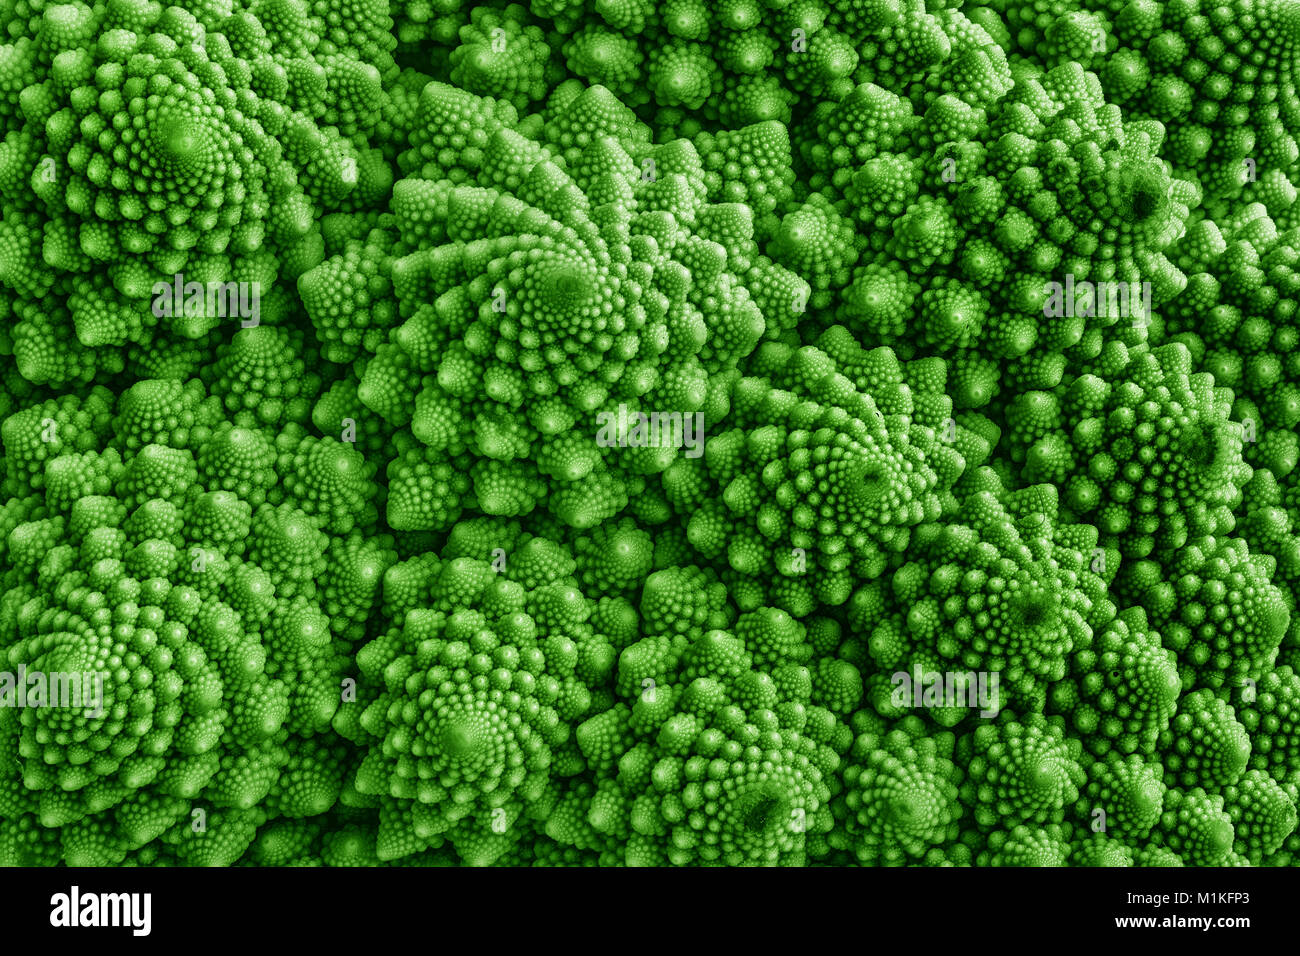 Dettaglio del cavolfiore Romanesco - un giardino vegetale la cui crescita patterns sembrano essere controllati da Mandelbrot geometria frattale Foto Stock